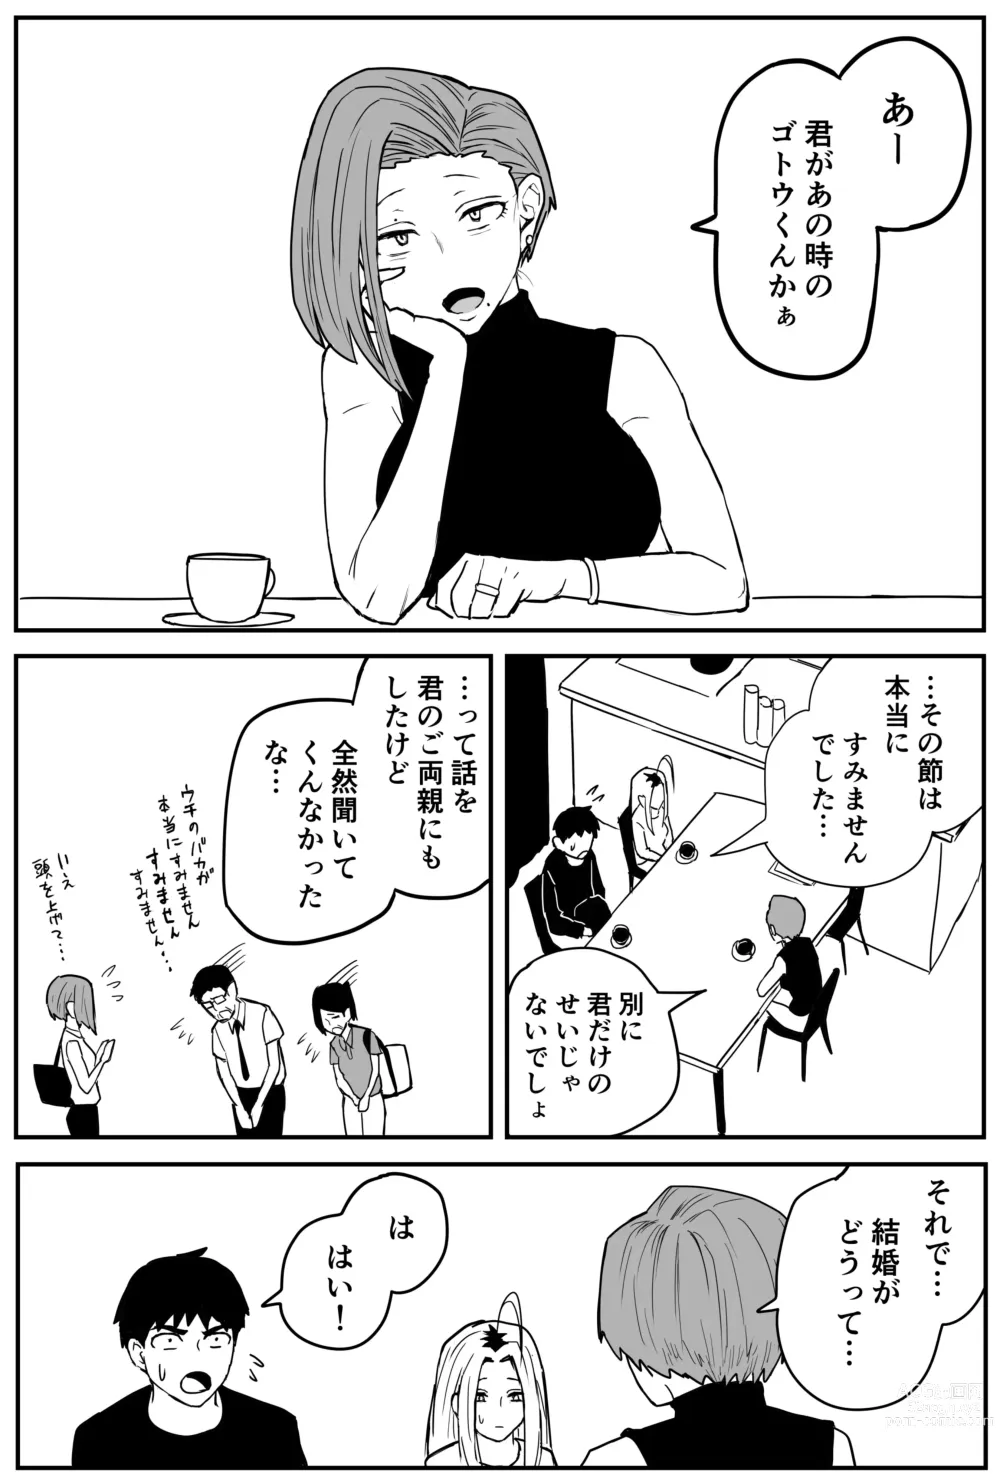 Page 335 of doujinshi Gal JK Ero Manga Ch.1-27